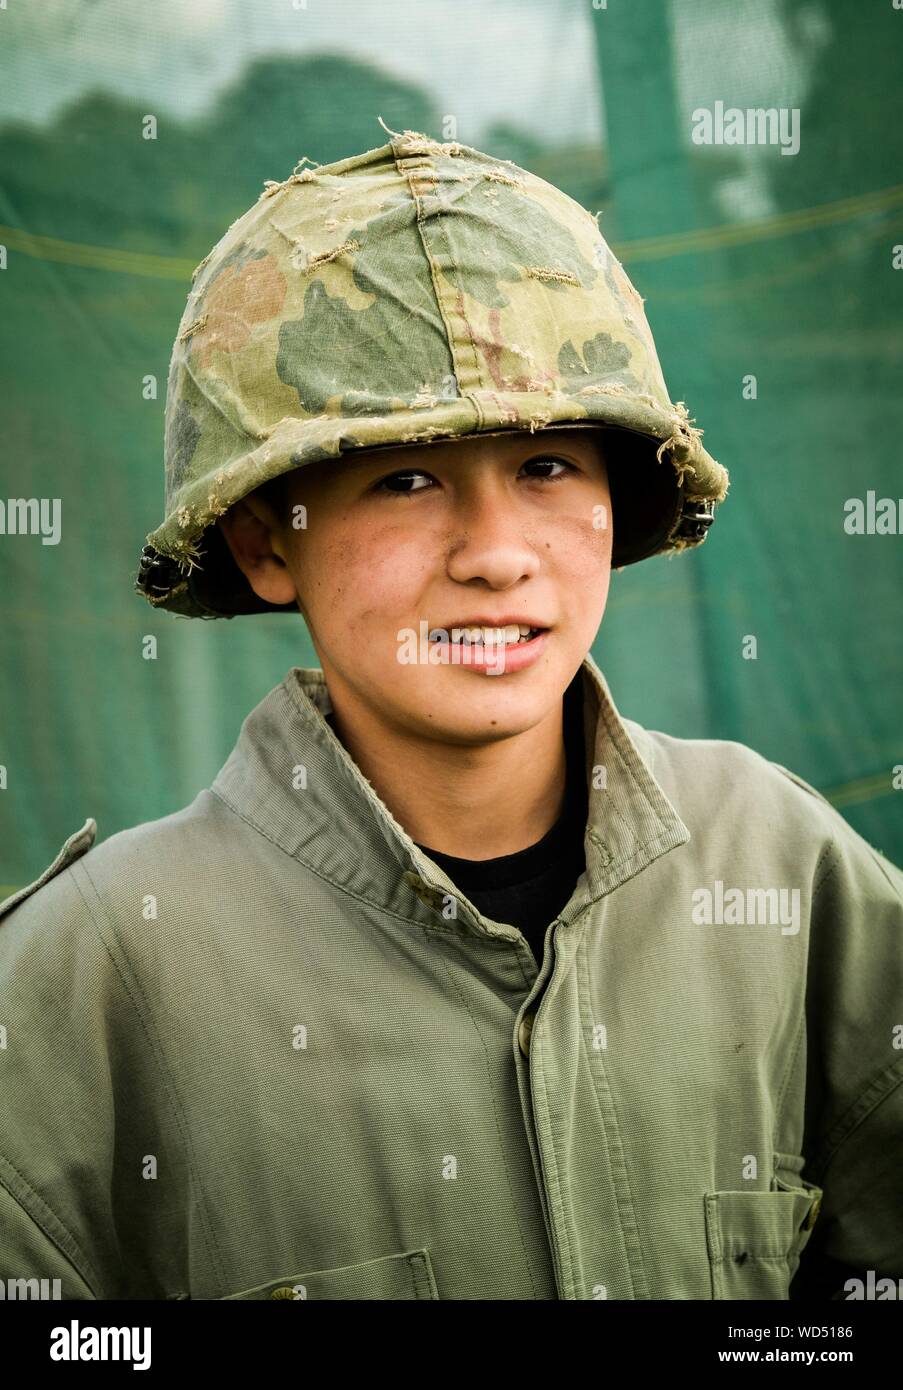 Retrato del soldado del Ejército de Adolescentes Foto de stock